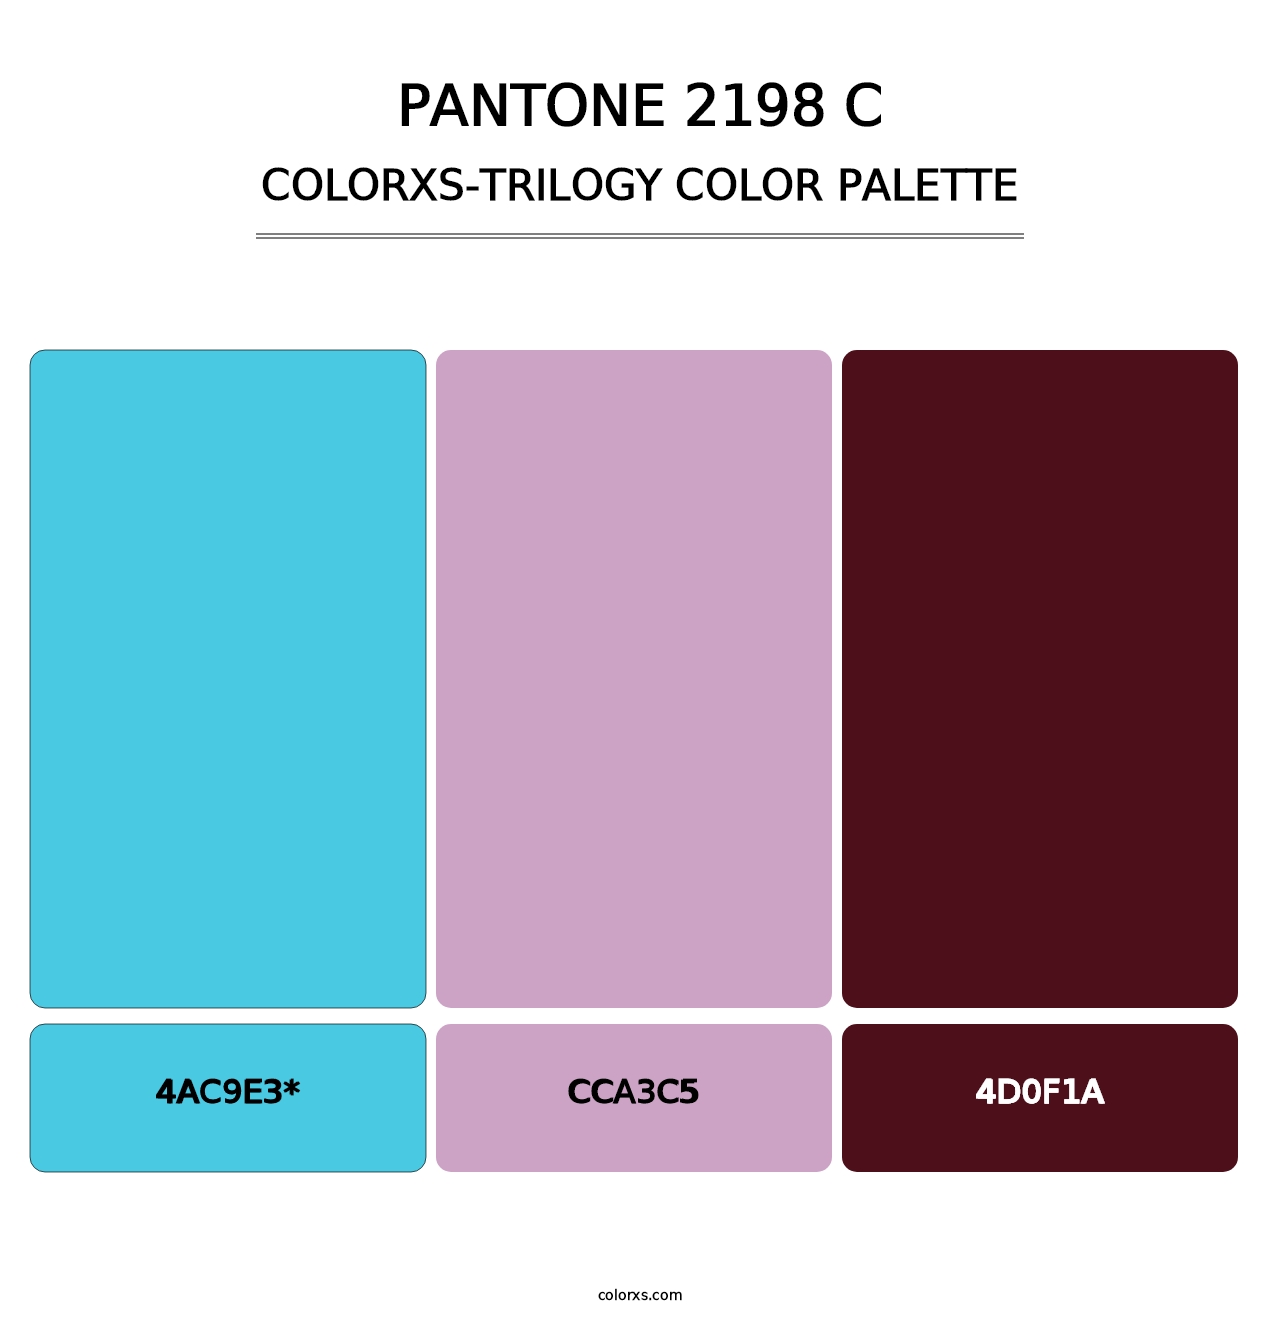 PANTONE 2198 C - Colorxs Trilogy Palette